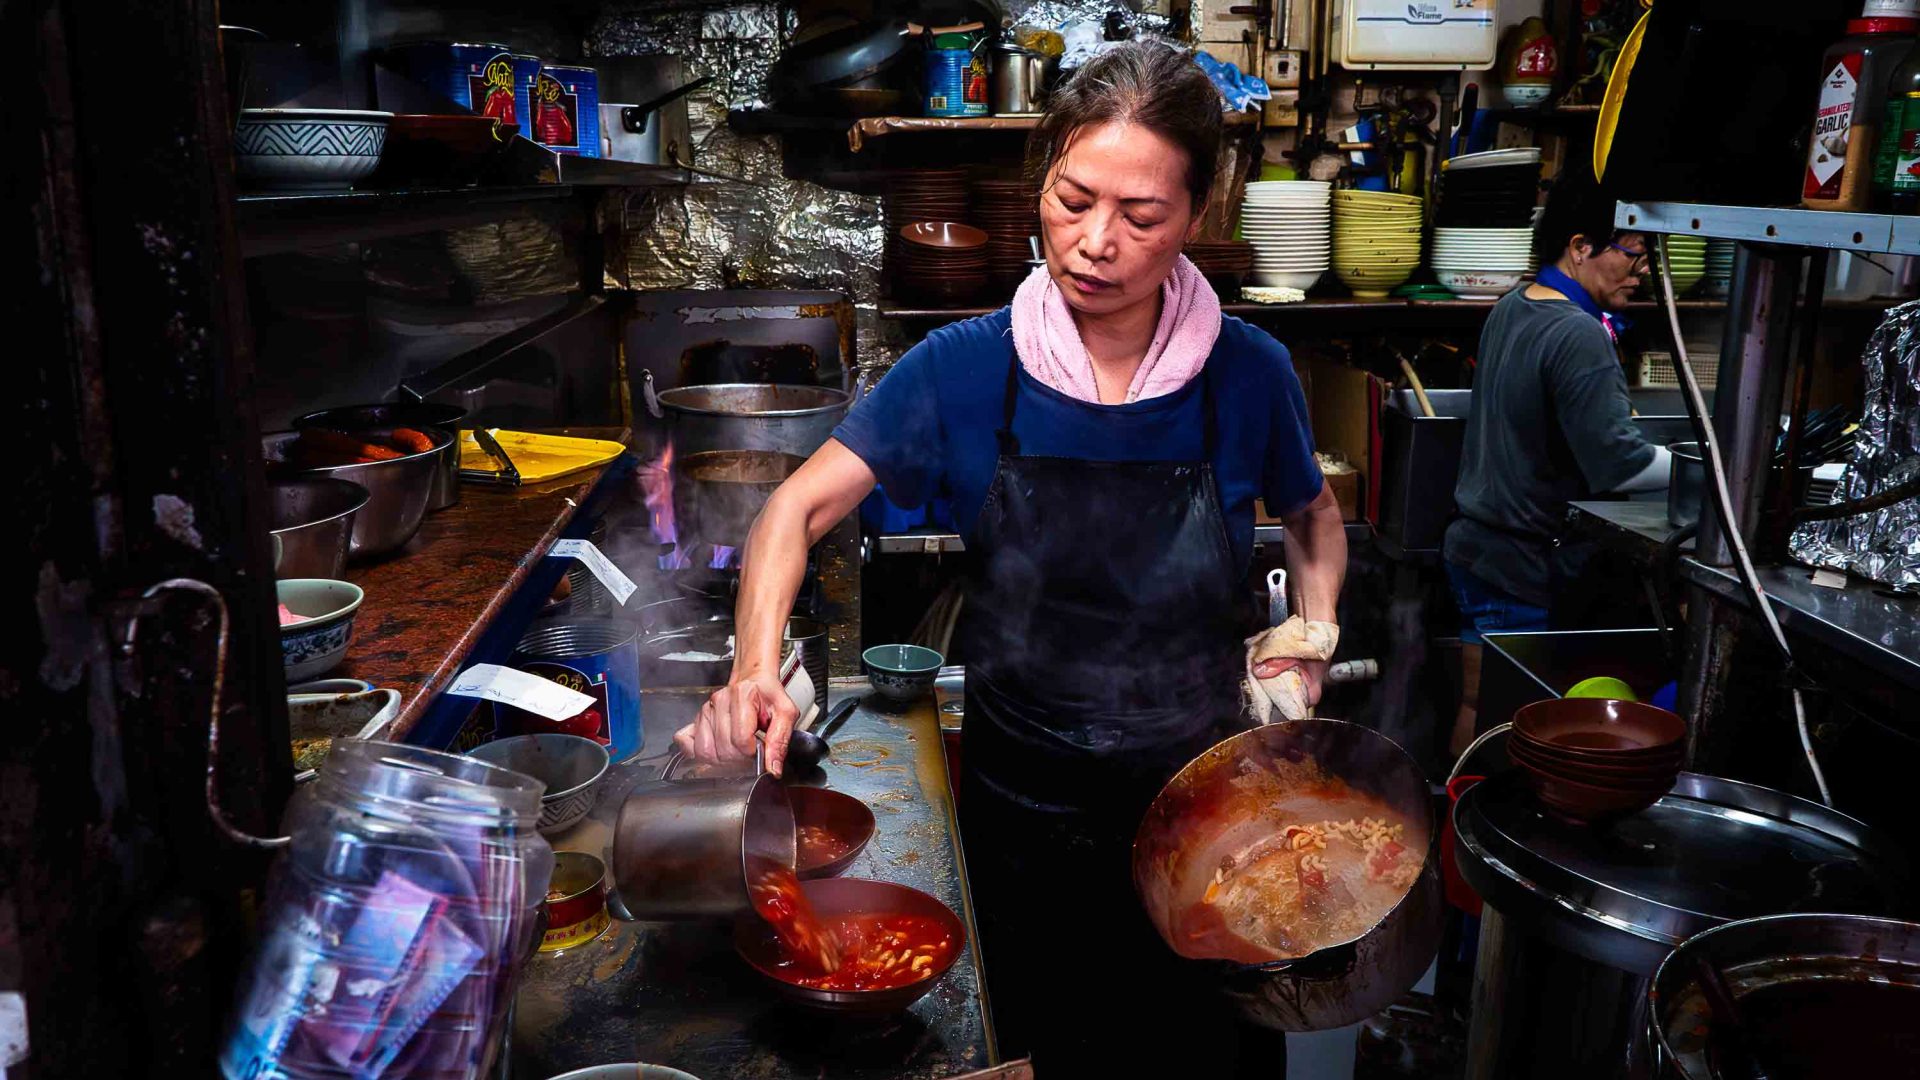 A female chef cooks tomato soup in a kitchen.